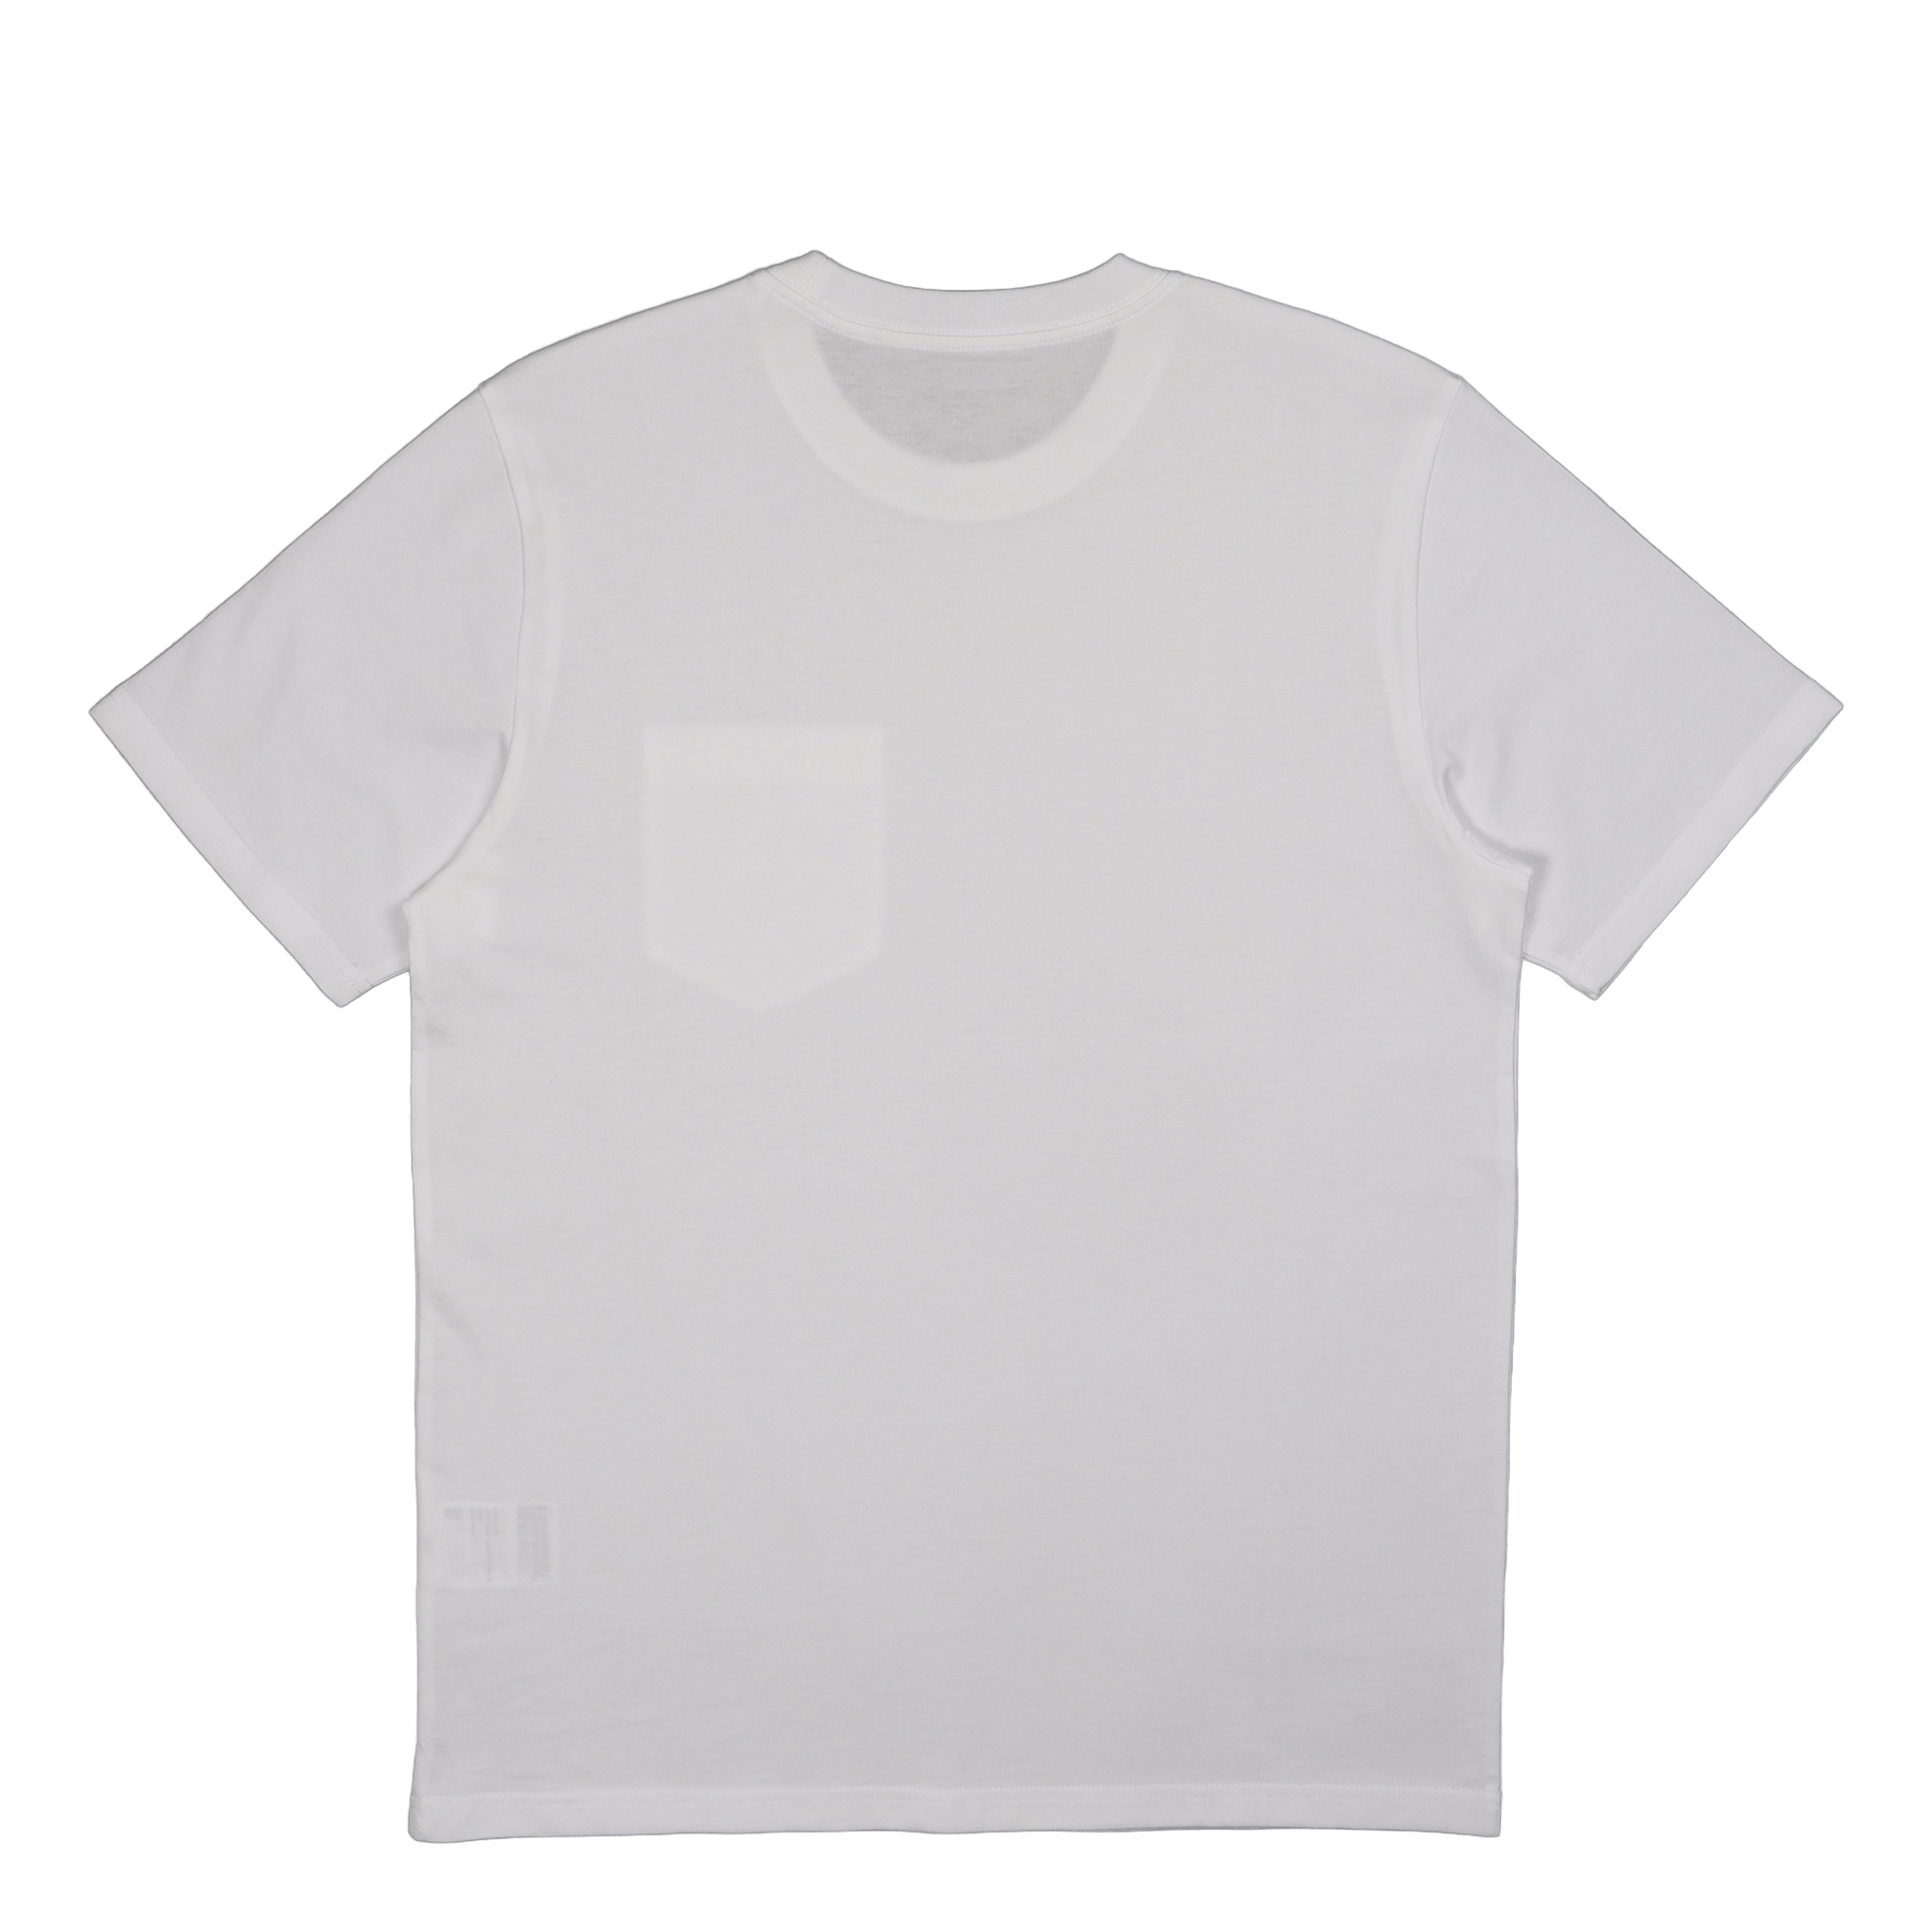 S/s Pocket T-shirt White